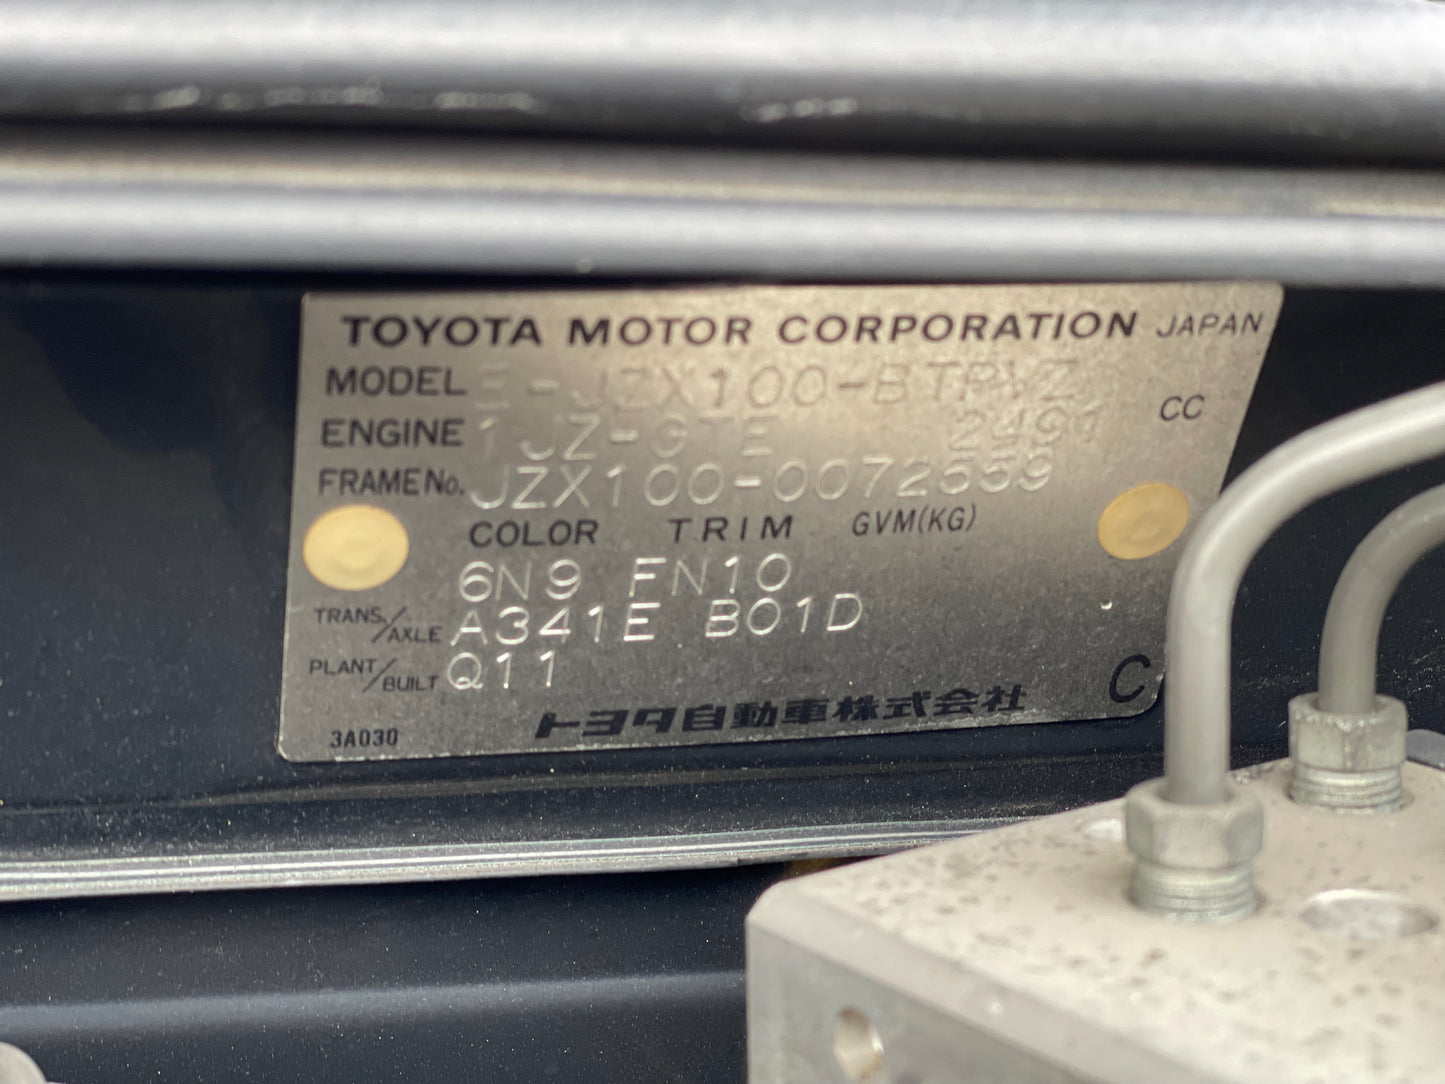 Toyota Chaser 1997 JZX100 - 1JZGTE